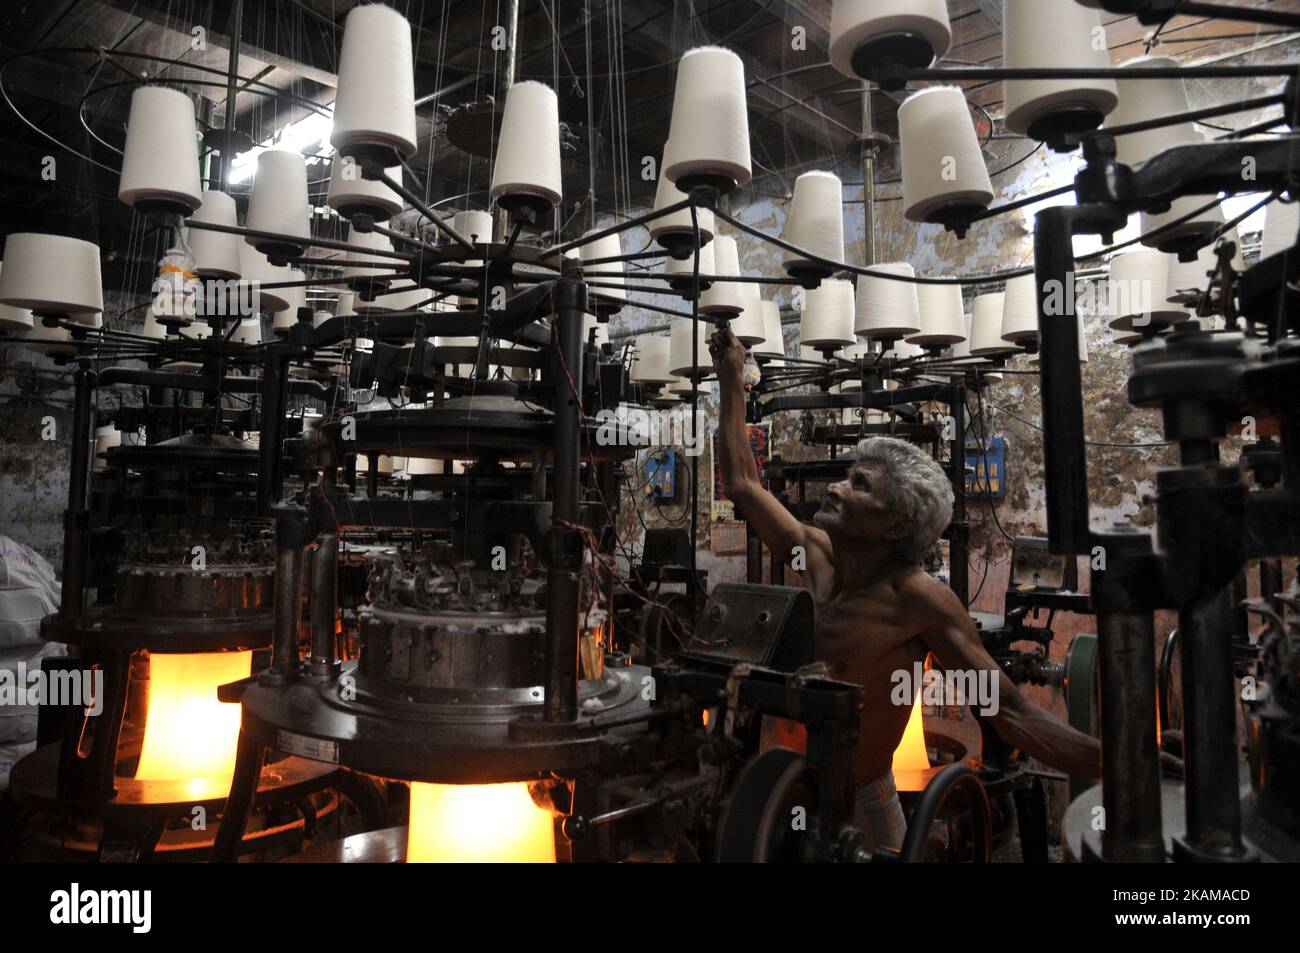 Un dipendente indiano lavora in una fabbrica di biancheria intima a Kolkata, India, il 29 marzo 2017. (Foto di Debajyoti Chakraborty/NurPhoto) *** Please use Credit from Credit Field *** Foto Stock